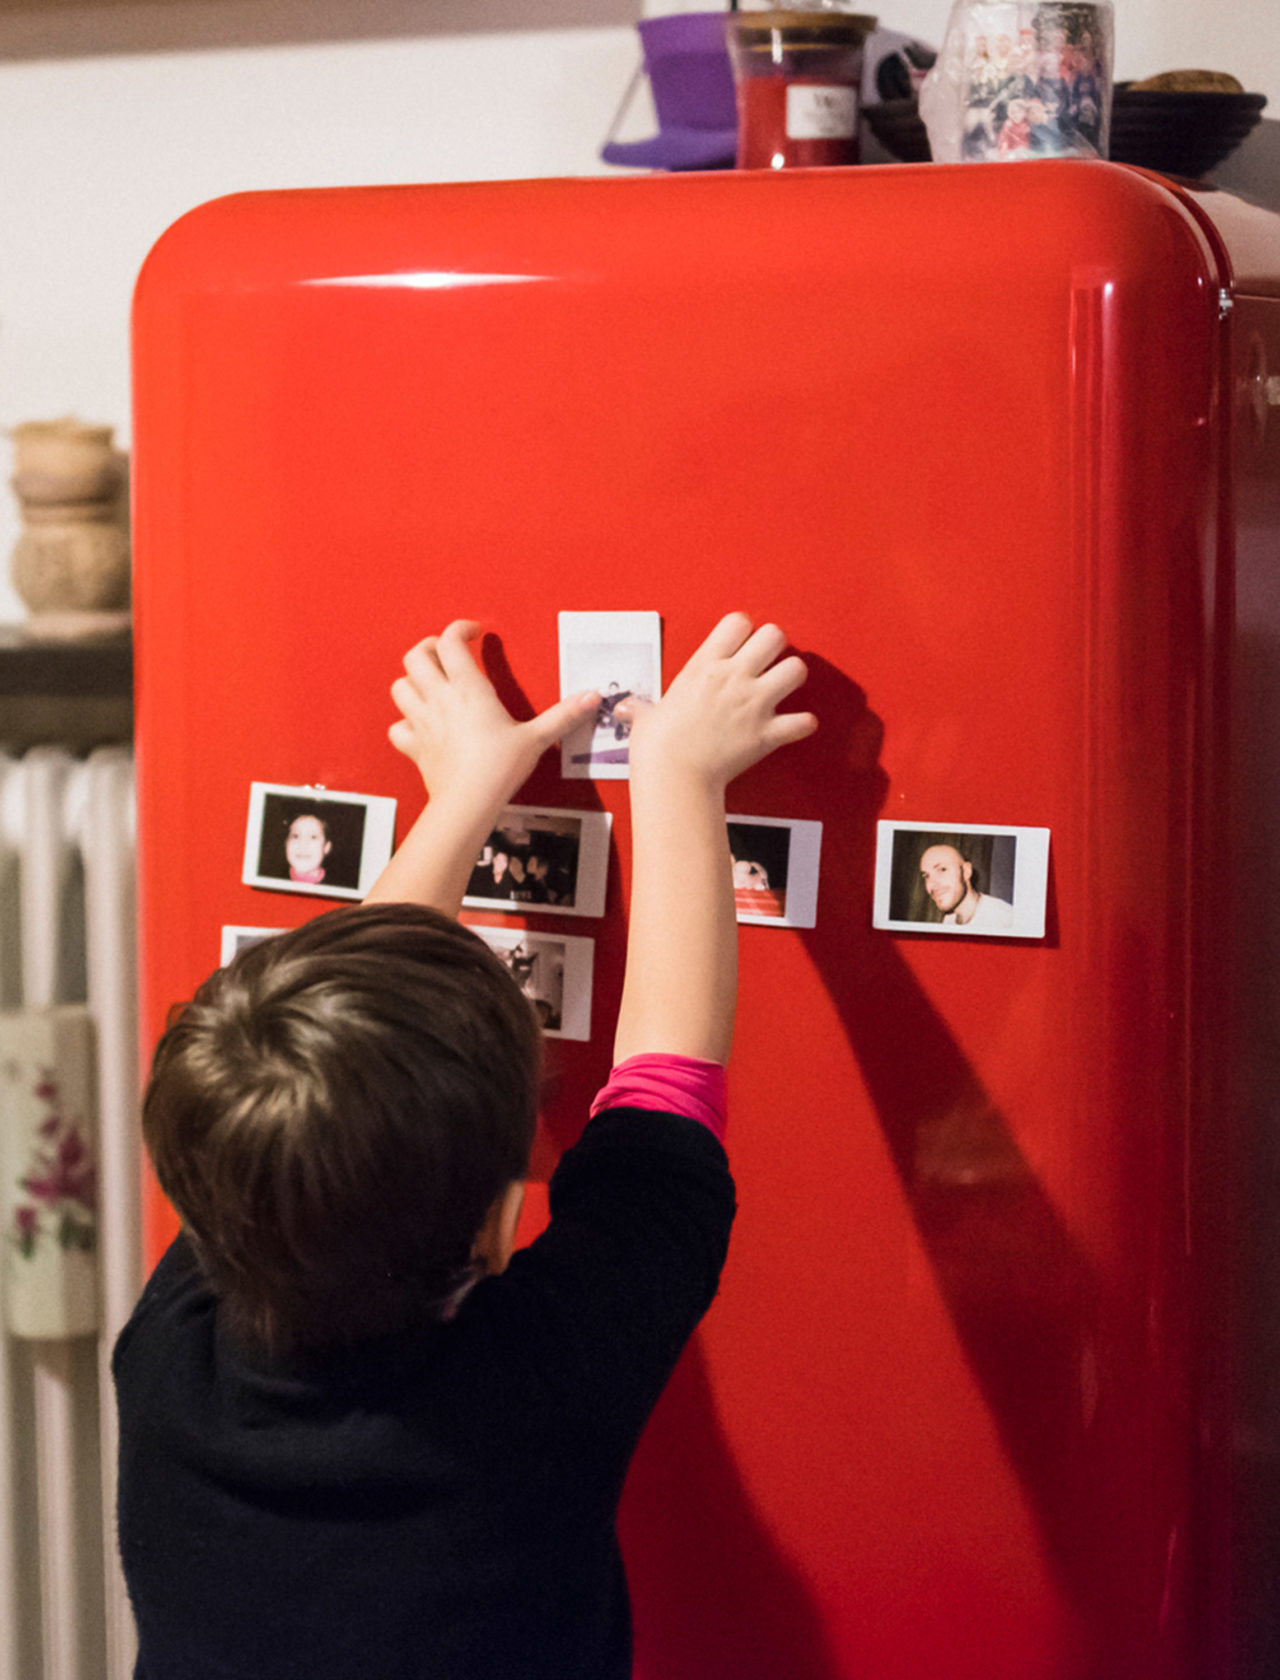 Ein Kind klebt Polaroids an einen roten, pulverlackierten Retro-Kühlschrank